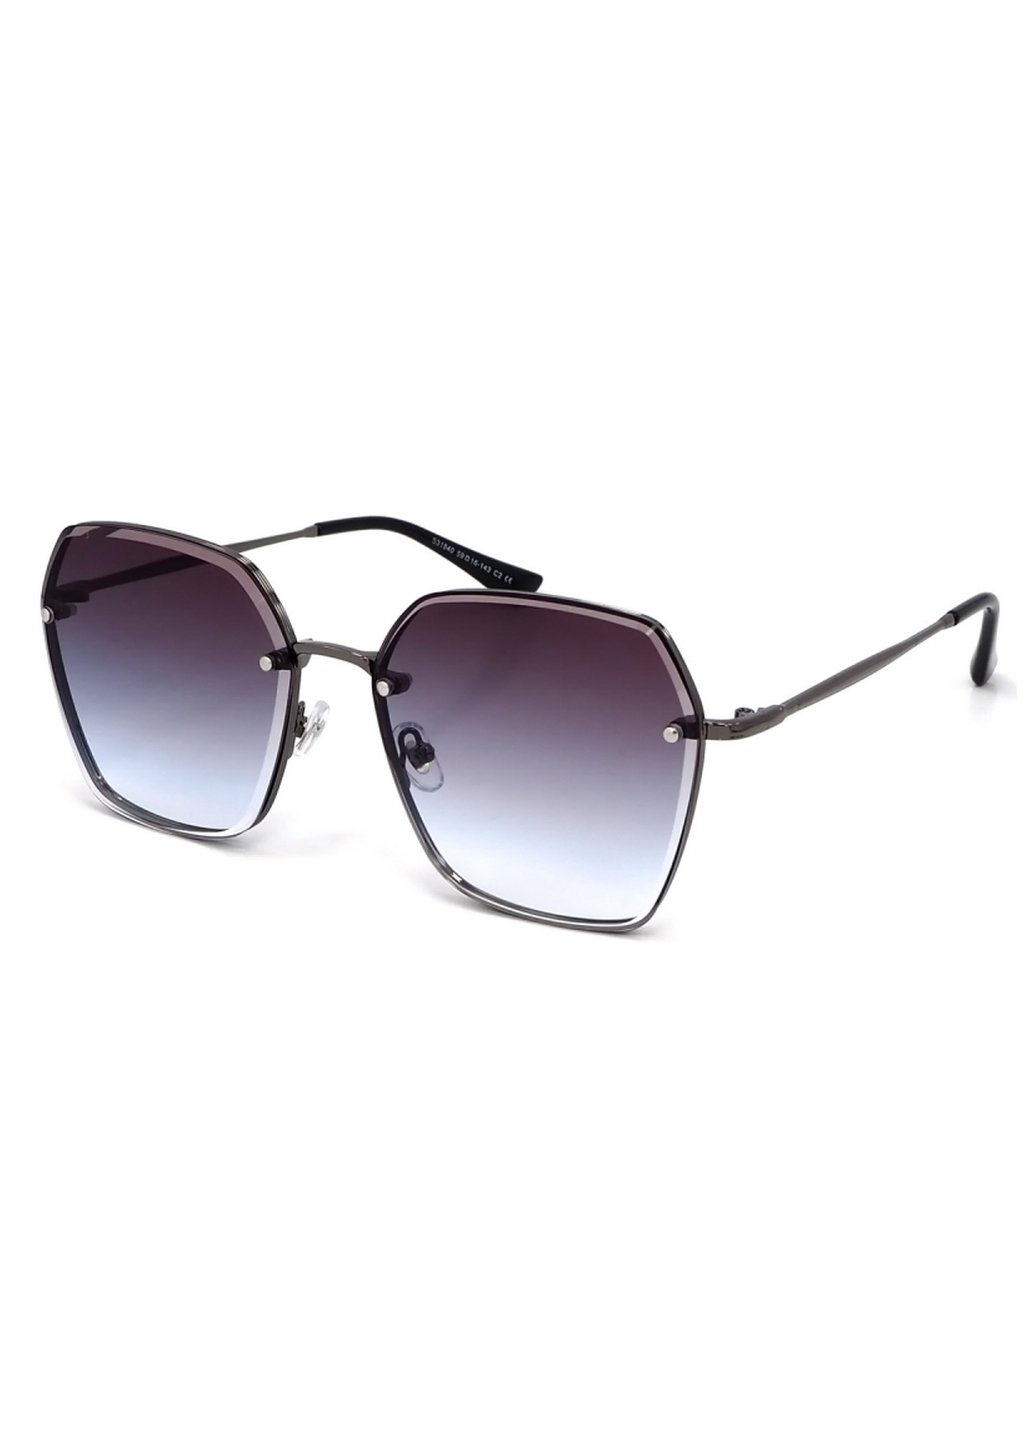 Купить Женские солнцезащитные очки Merlini с поляризацией S31840 117108 - Серый в интернет-магазине